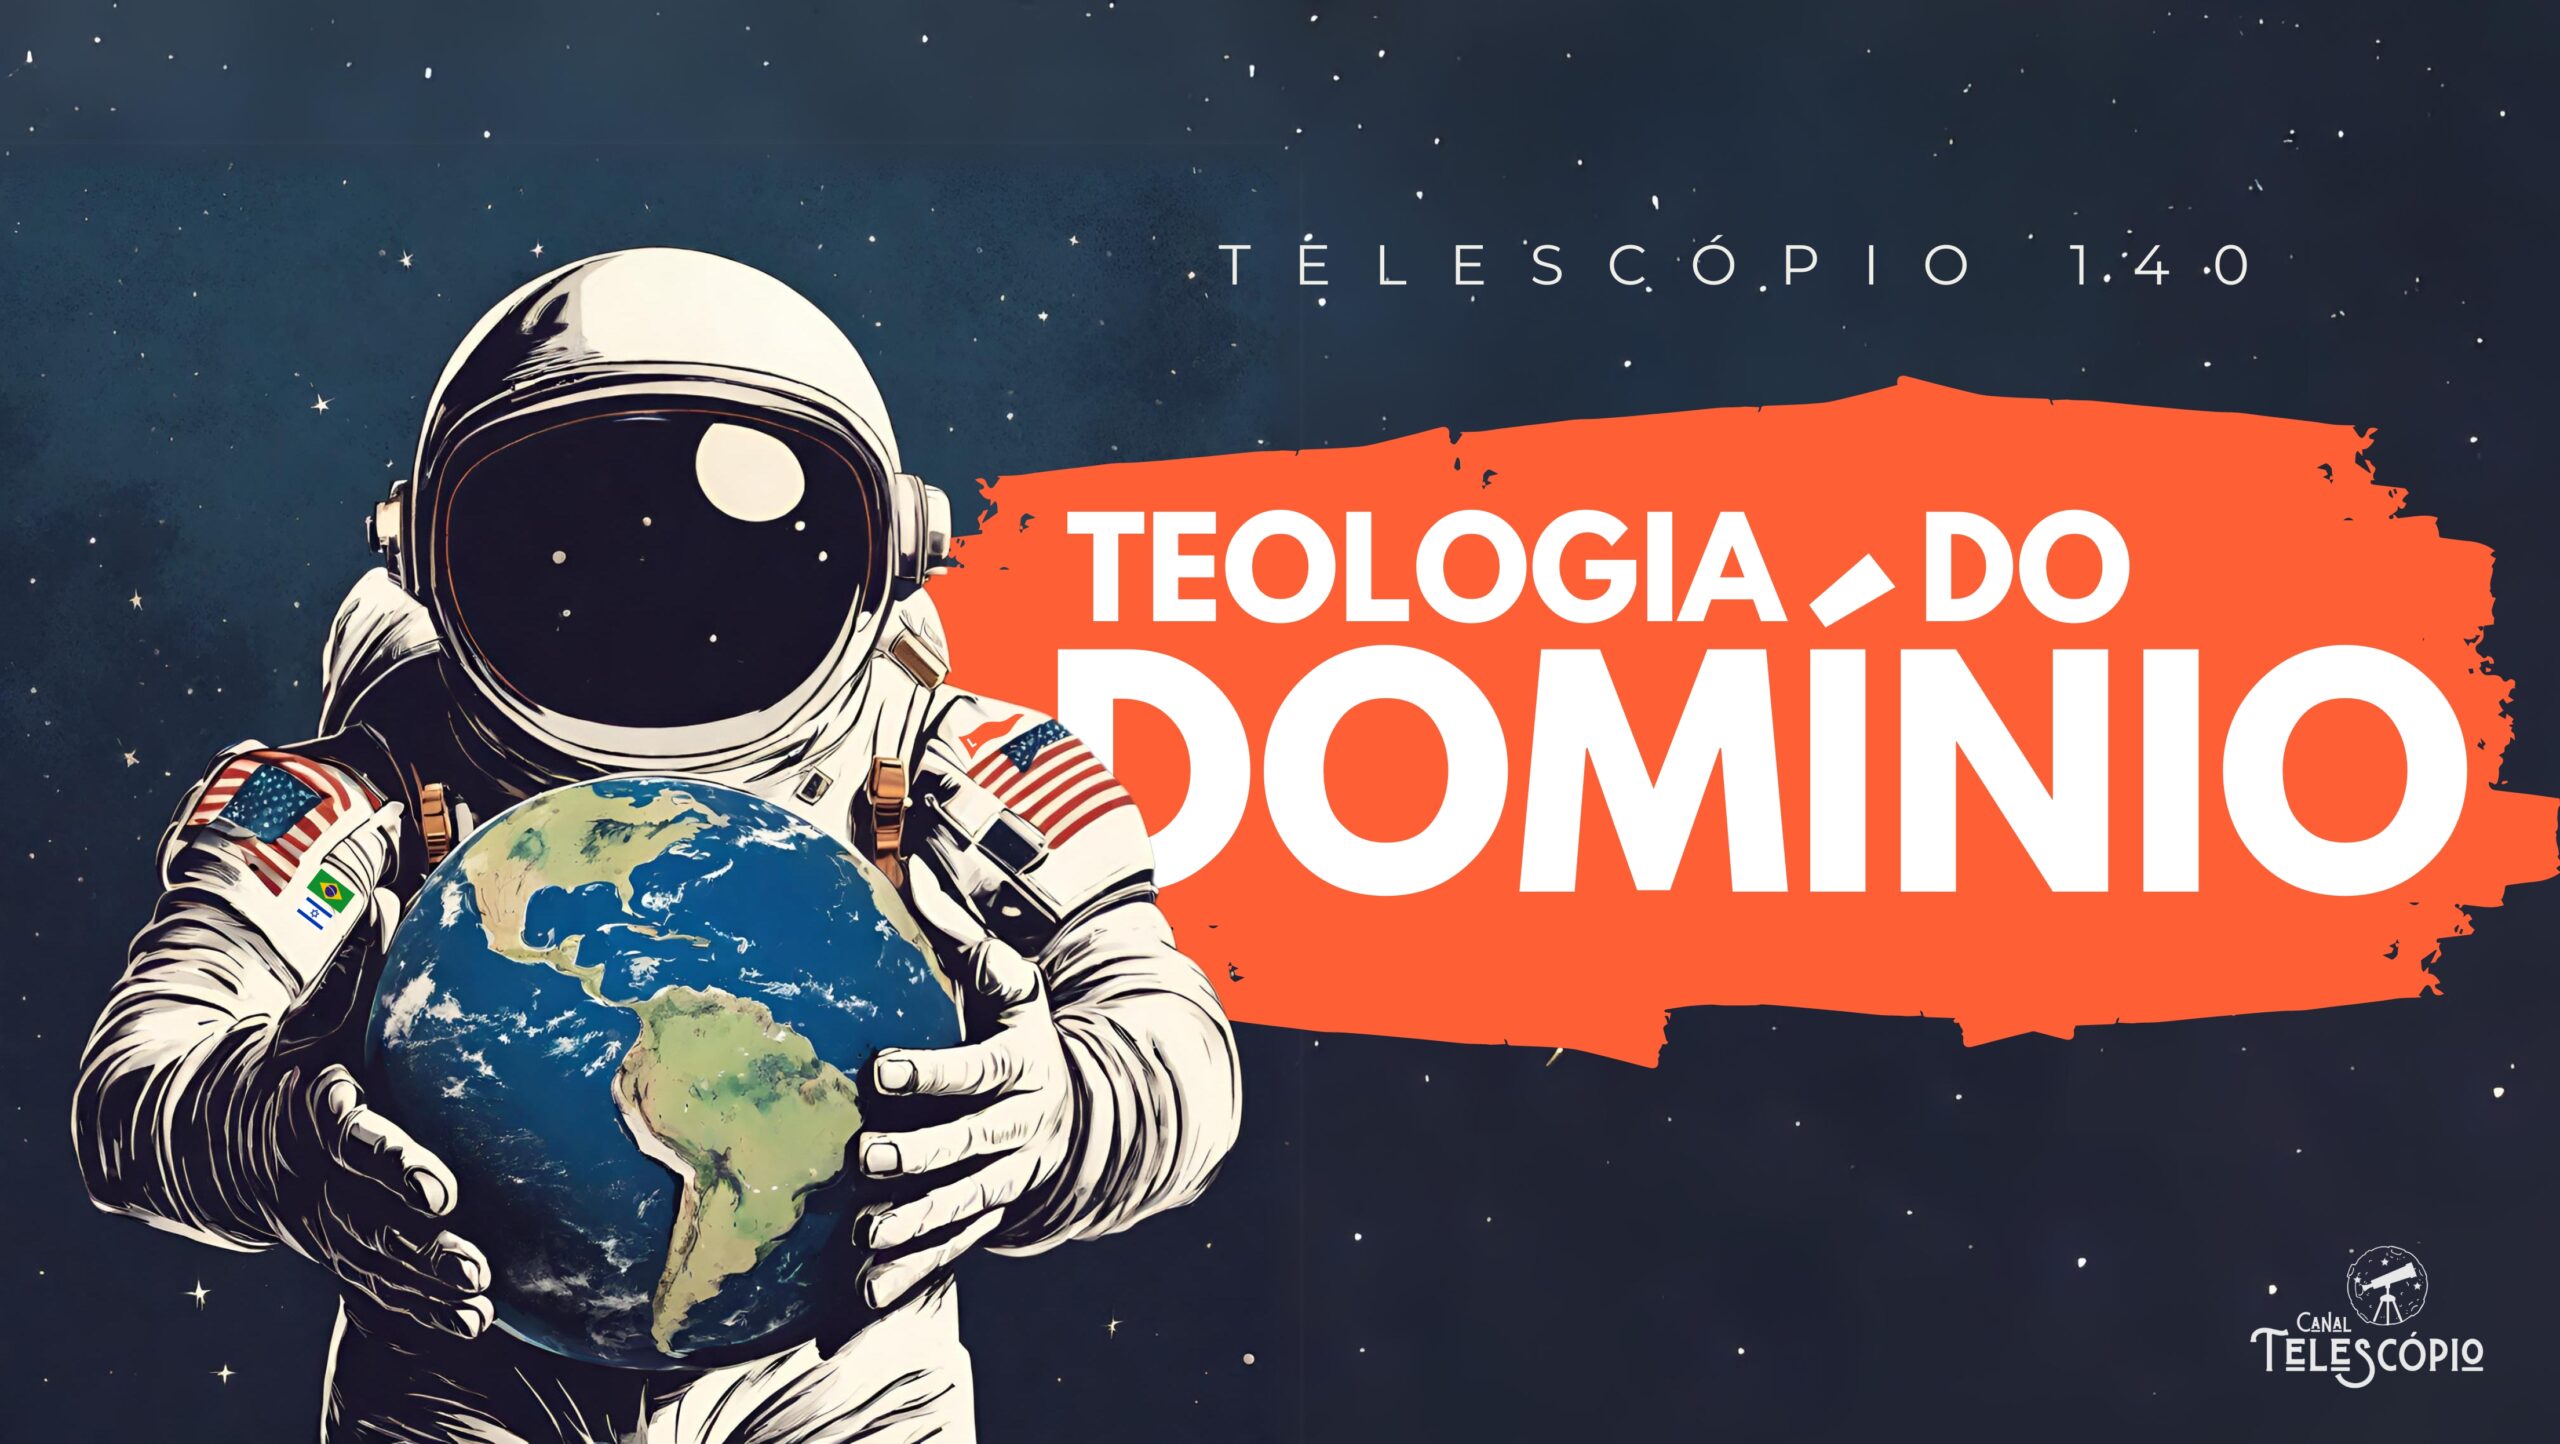 Imagem de um astronauta gigante segurando o planeta Terra com as mãos. Na frente, letreiro com o título do programa: "Teologia do Domínio".